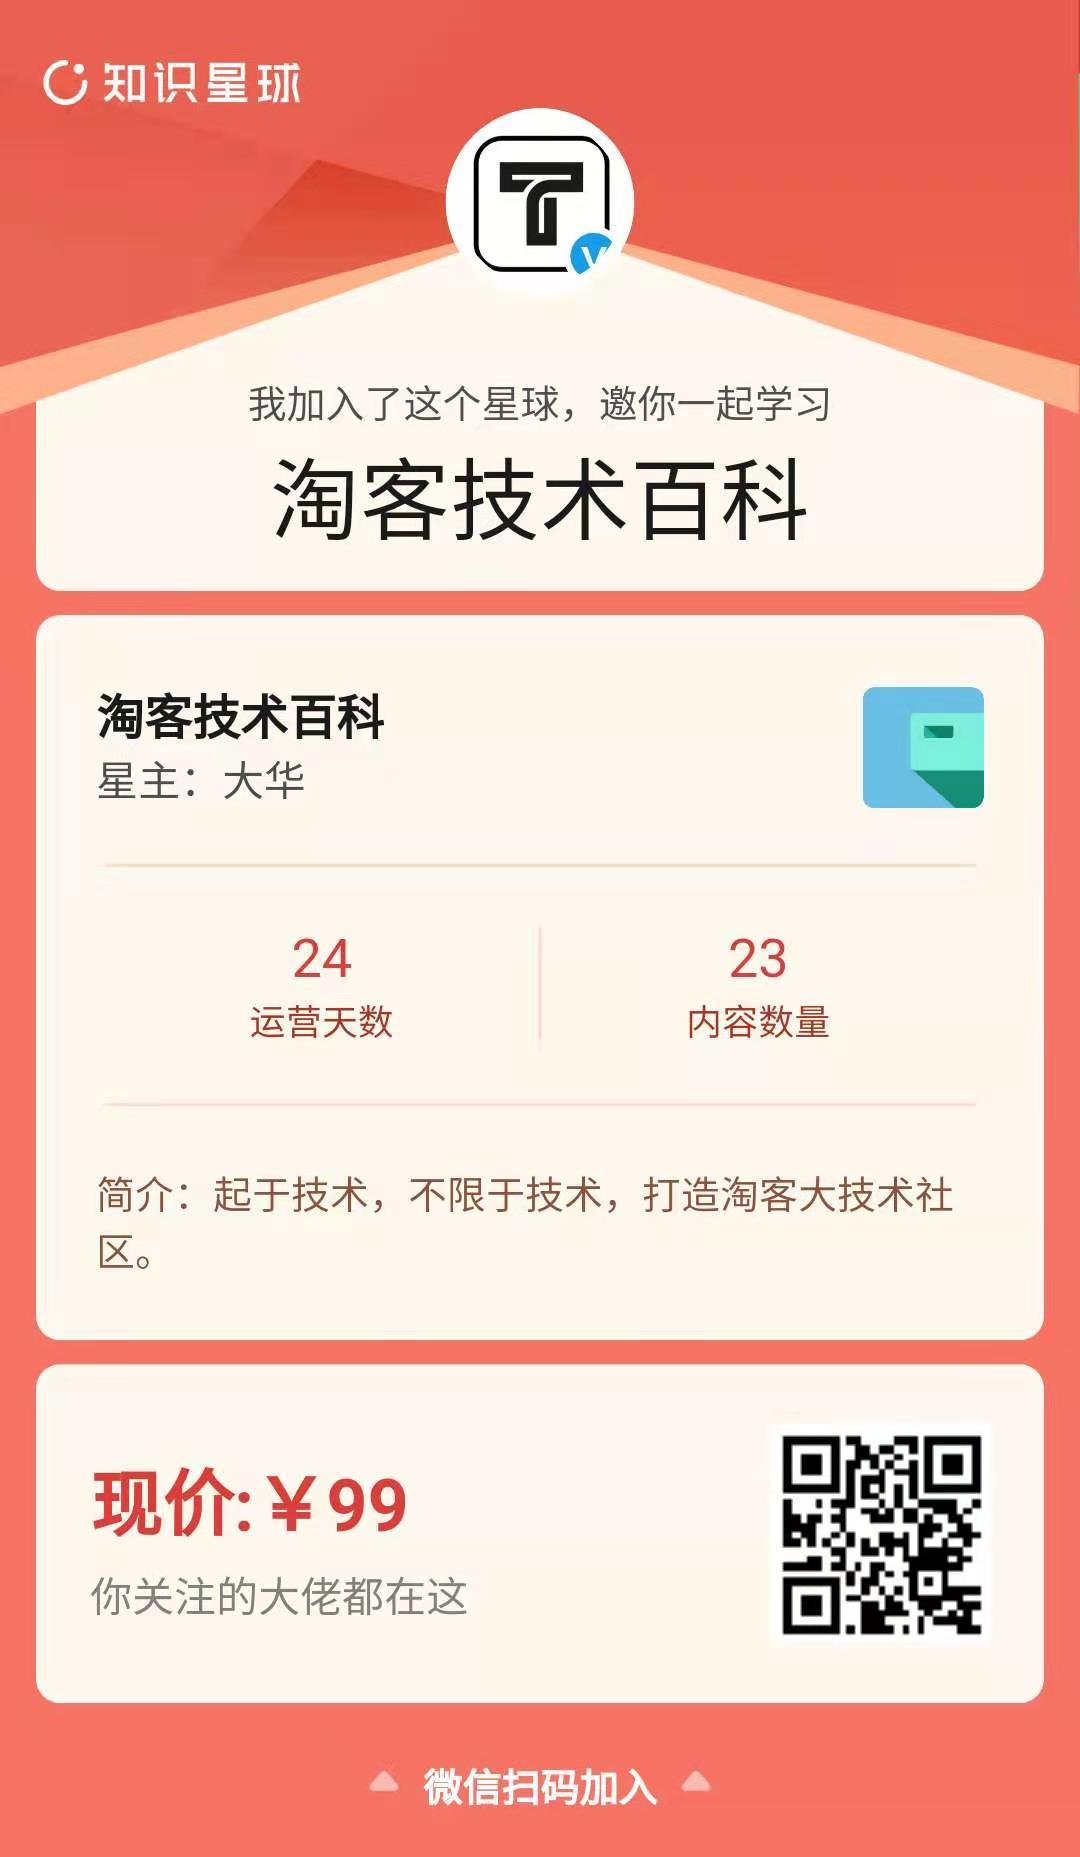 <a href='https://www.zhouxiaohui.cn/taobaoke/
' target='_blank'>淘客</a>马车<a href='https://www.zhouxiaohui.cn/taobaoke/
' target='_blank'>淘客</a>四大超级榜单已上线-第6张图片-周小辉博客